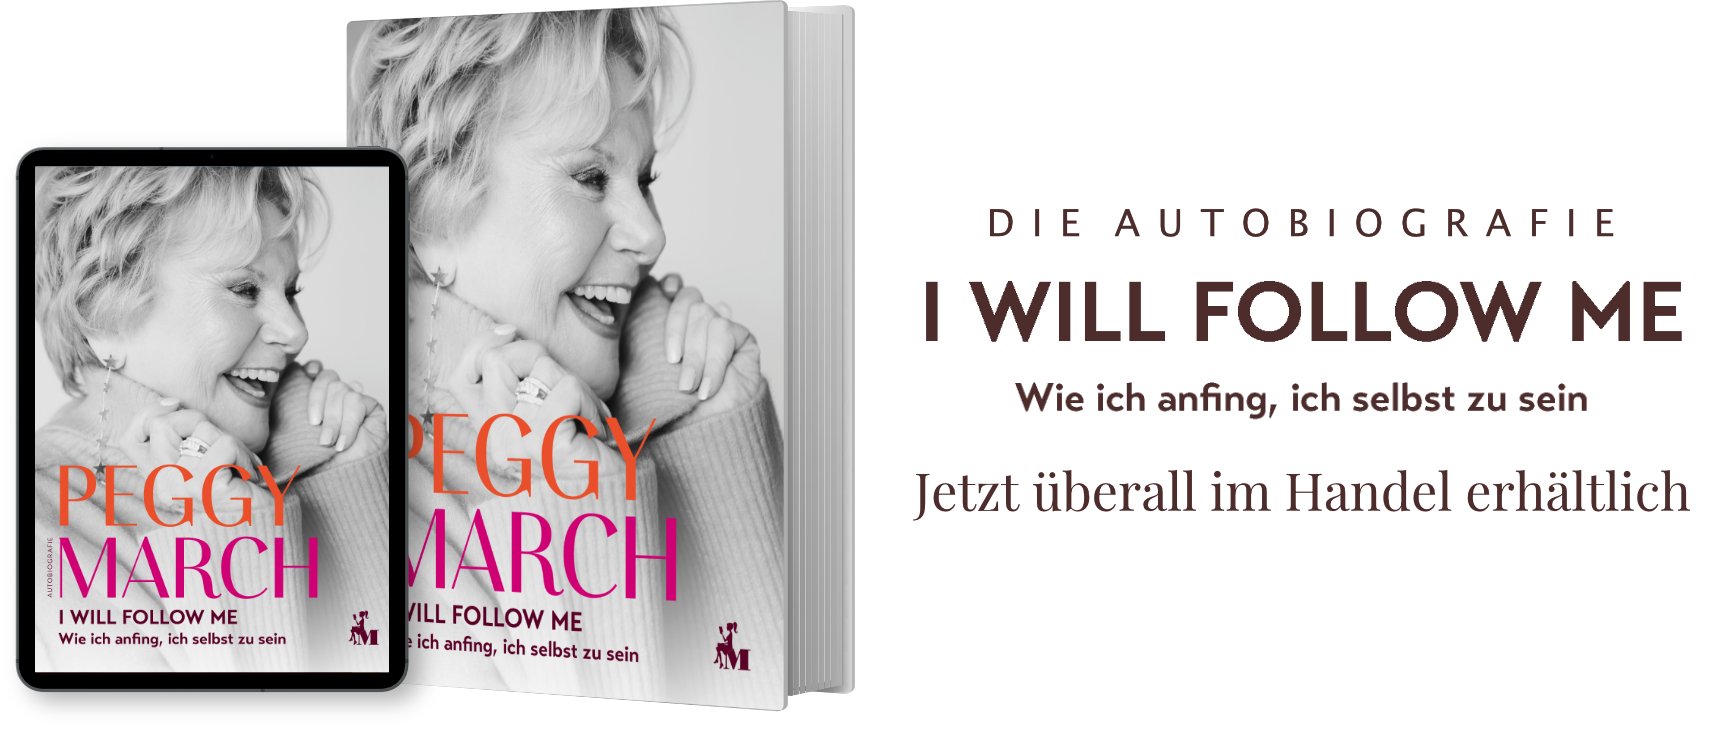 Peggy March - Die Autobiografie